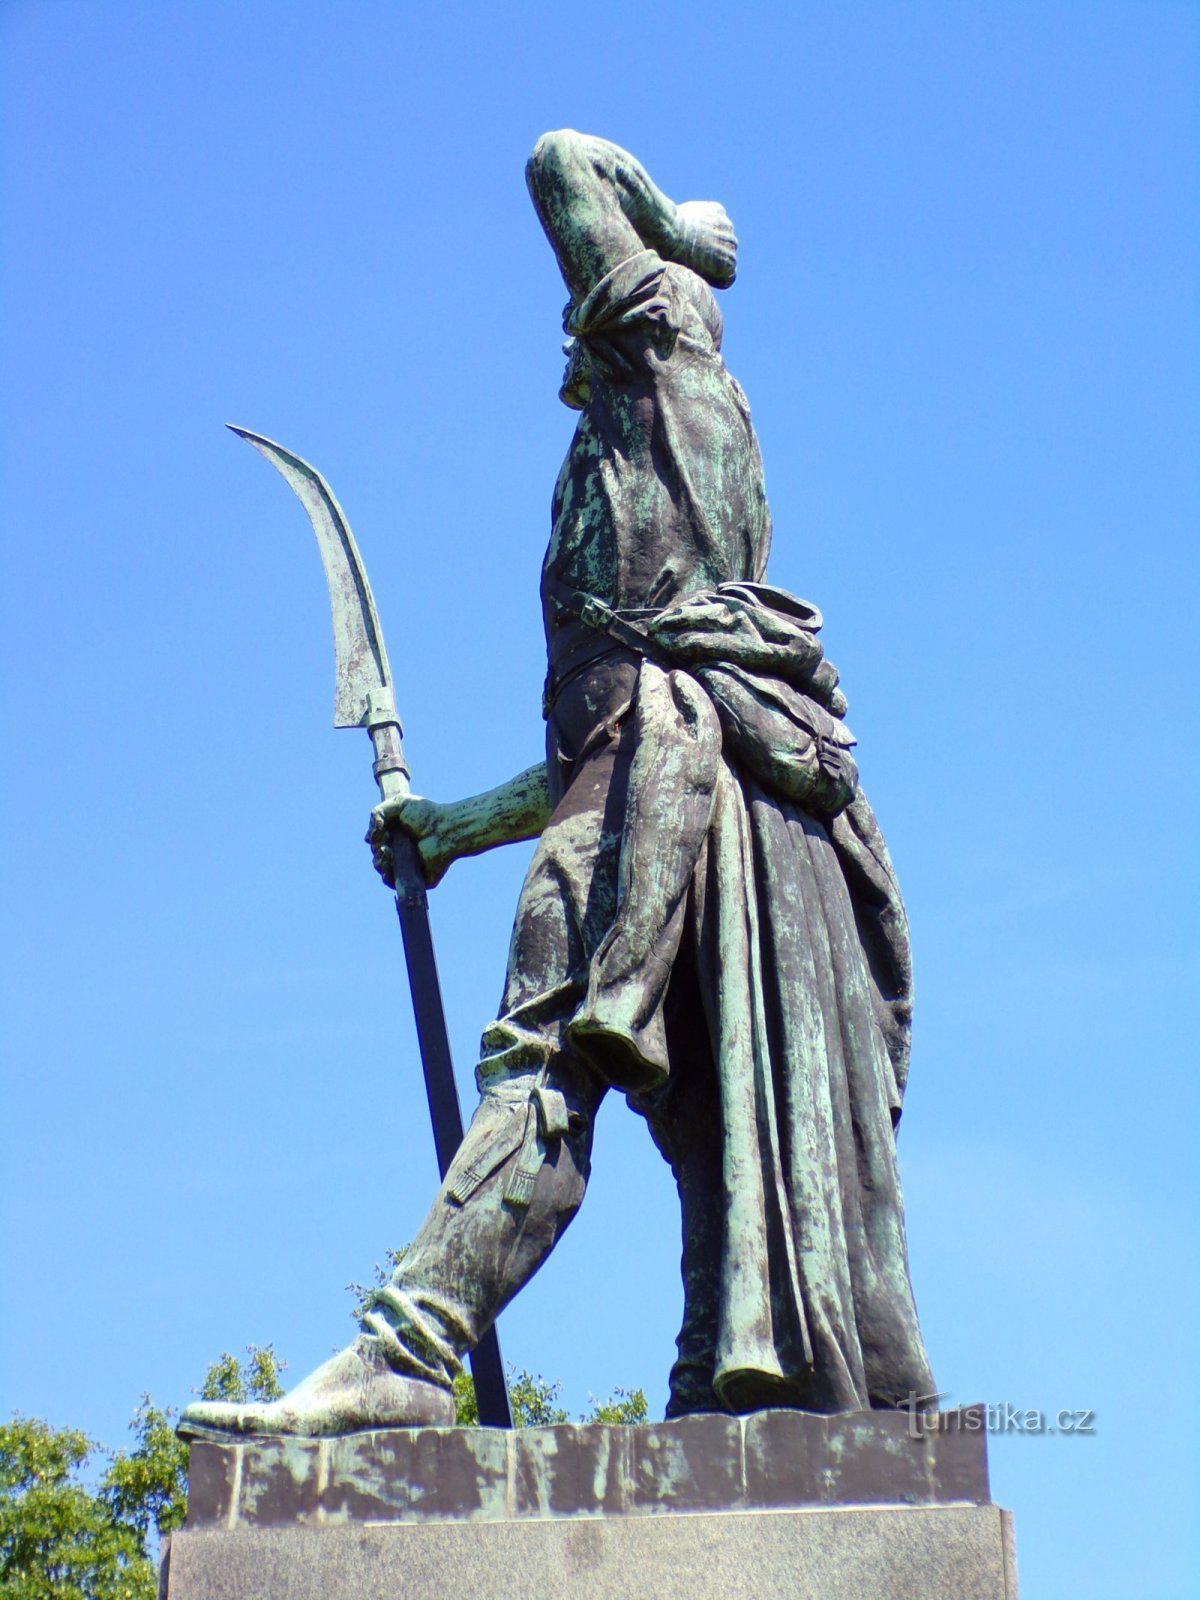 Monumento al levantamiento campesino de 1775 (Chlumec nad Cidlinou, 5.6.2022 de julio de XNUMX)